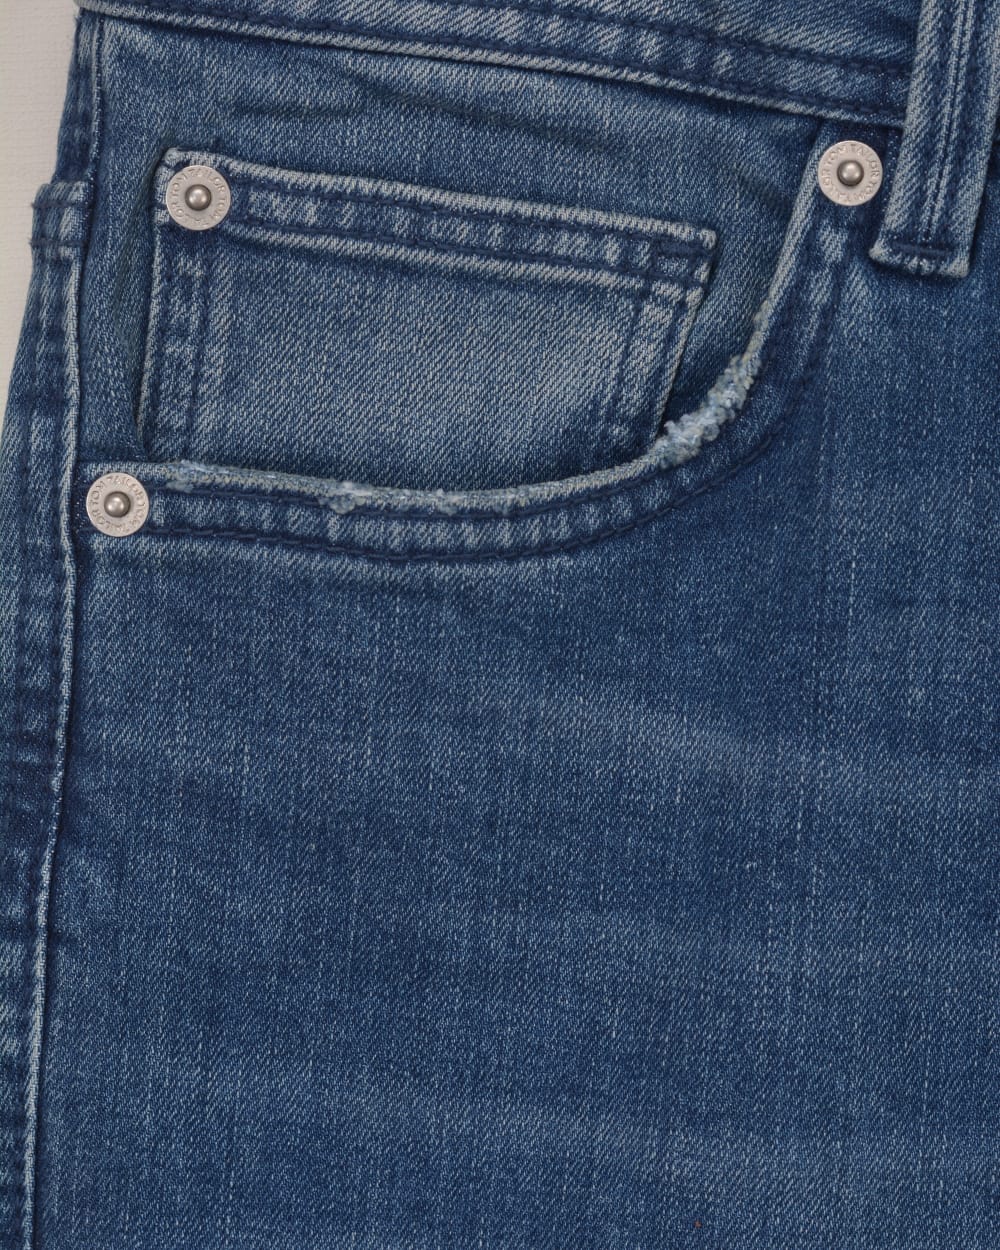 Tom Tailor Josh Denim | Coolmax Used jeans handsandhead slim Mid regular Stone Blue